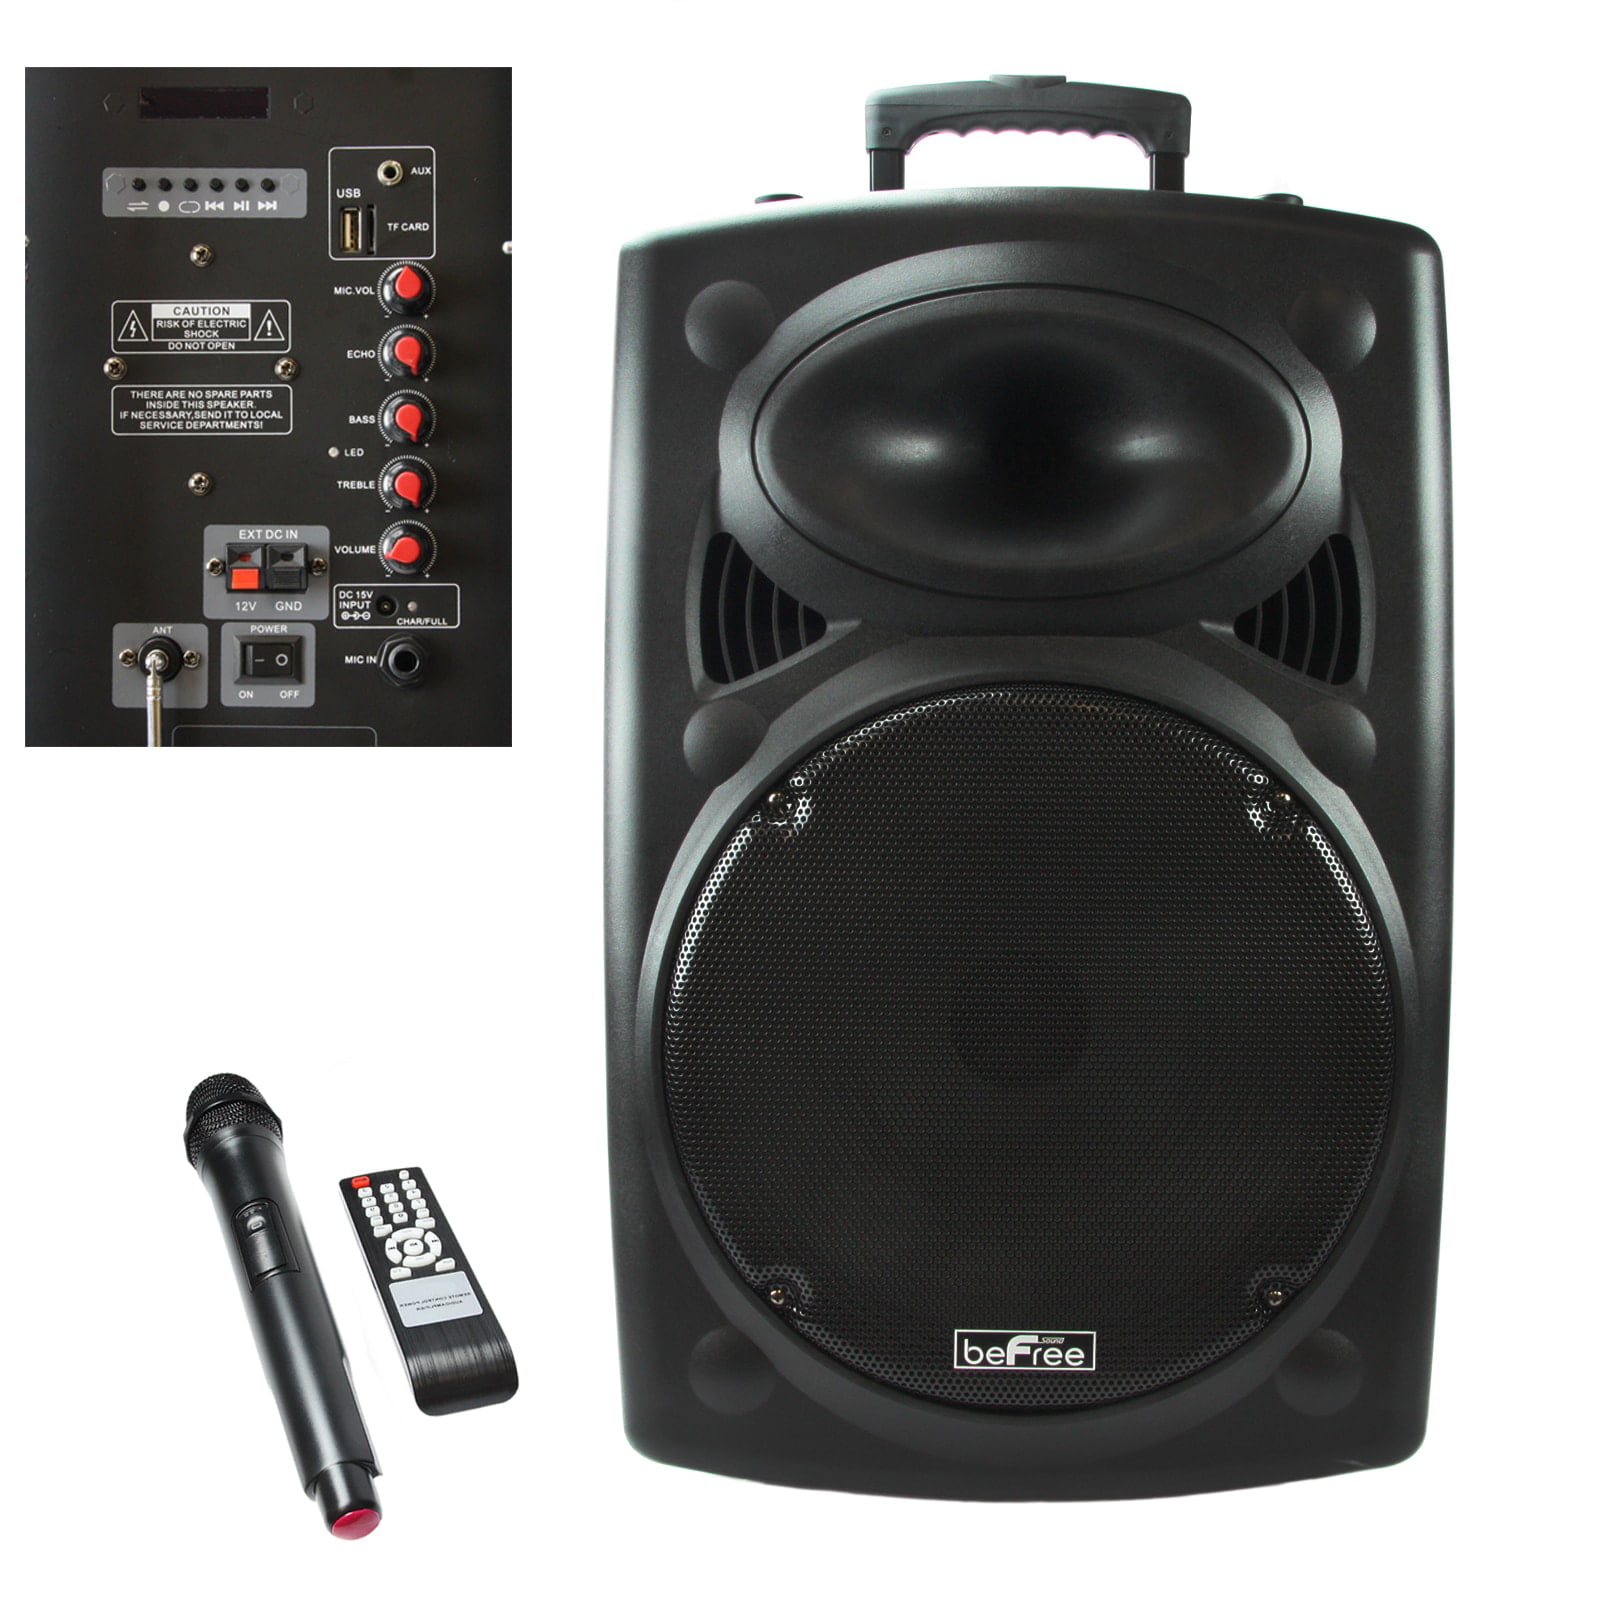 15 inch speaker sound